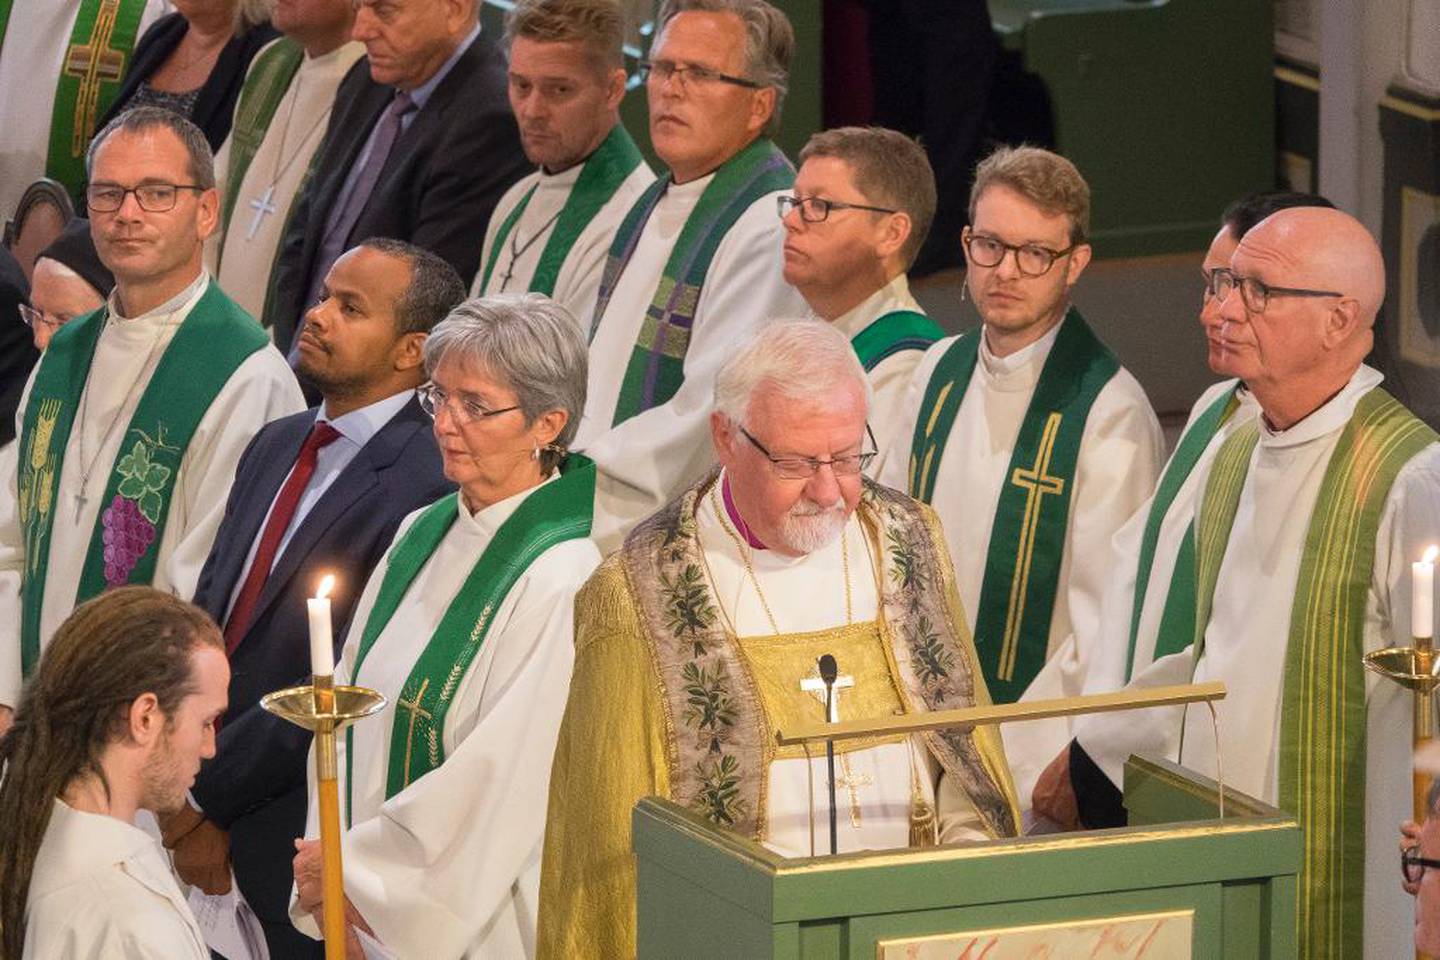 Med proster og kirkesjefer i ryggen leder Kvarme bibelteksten på avskjedsgudstjenesten i Oslo domkirke.